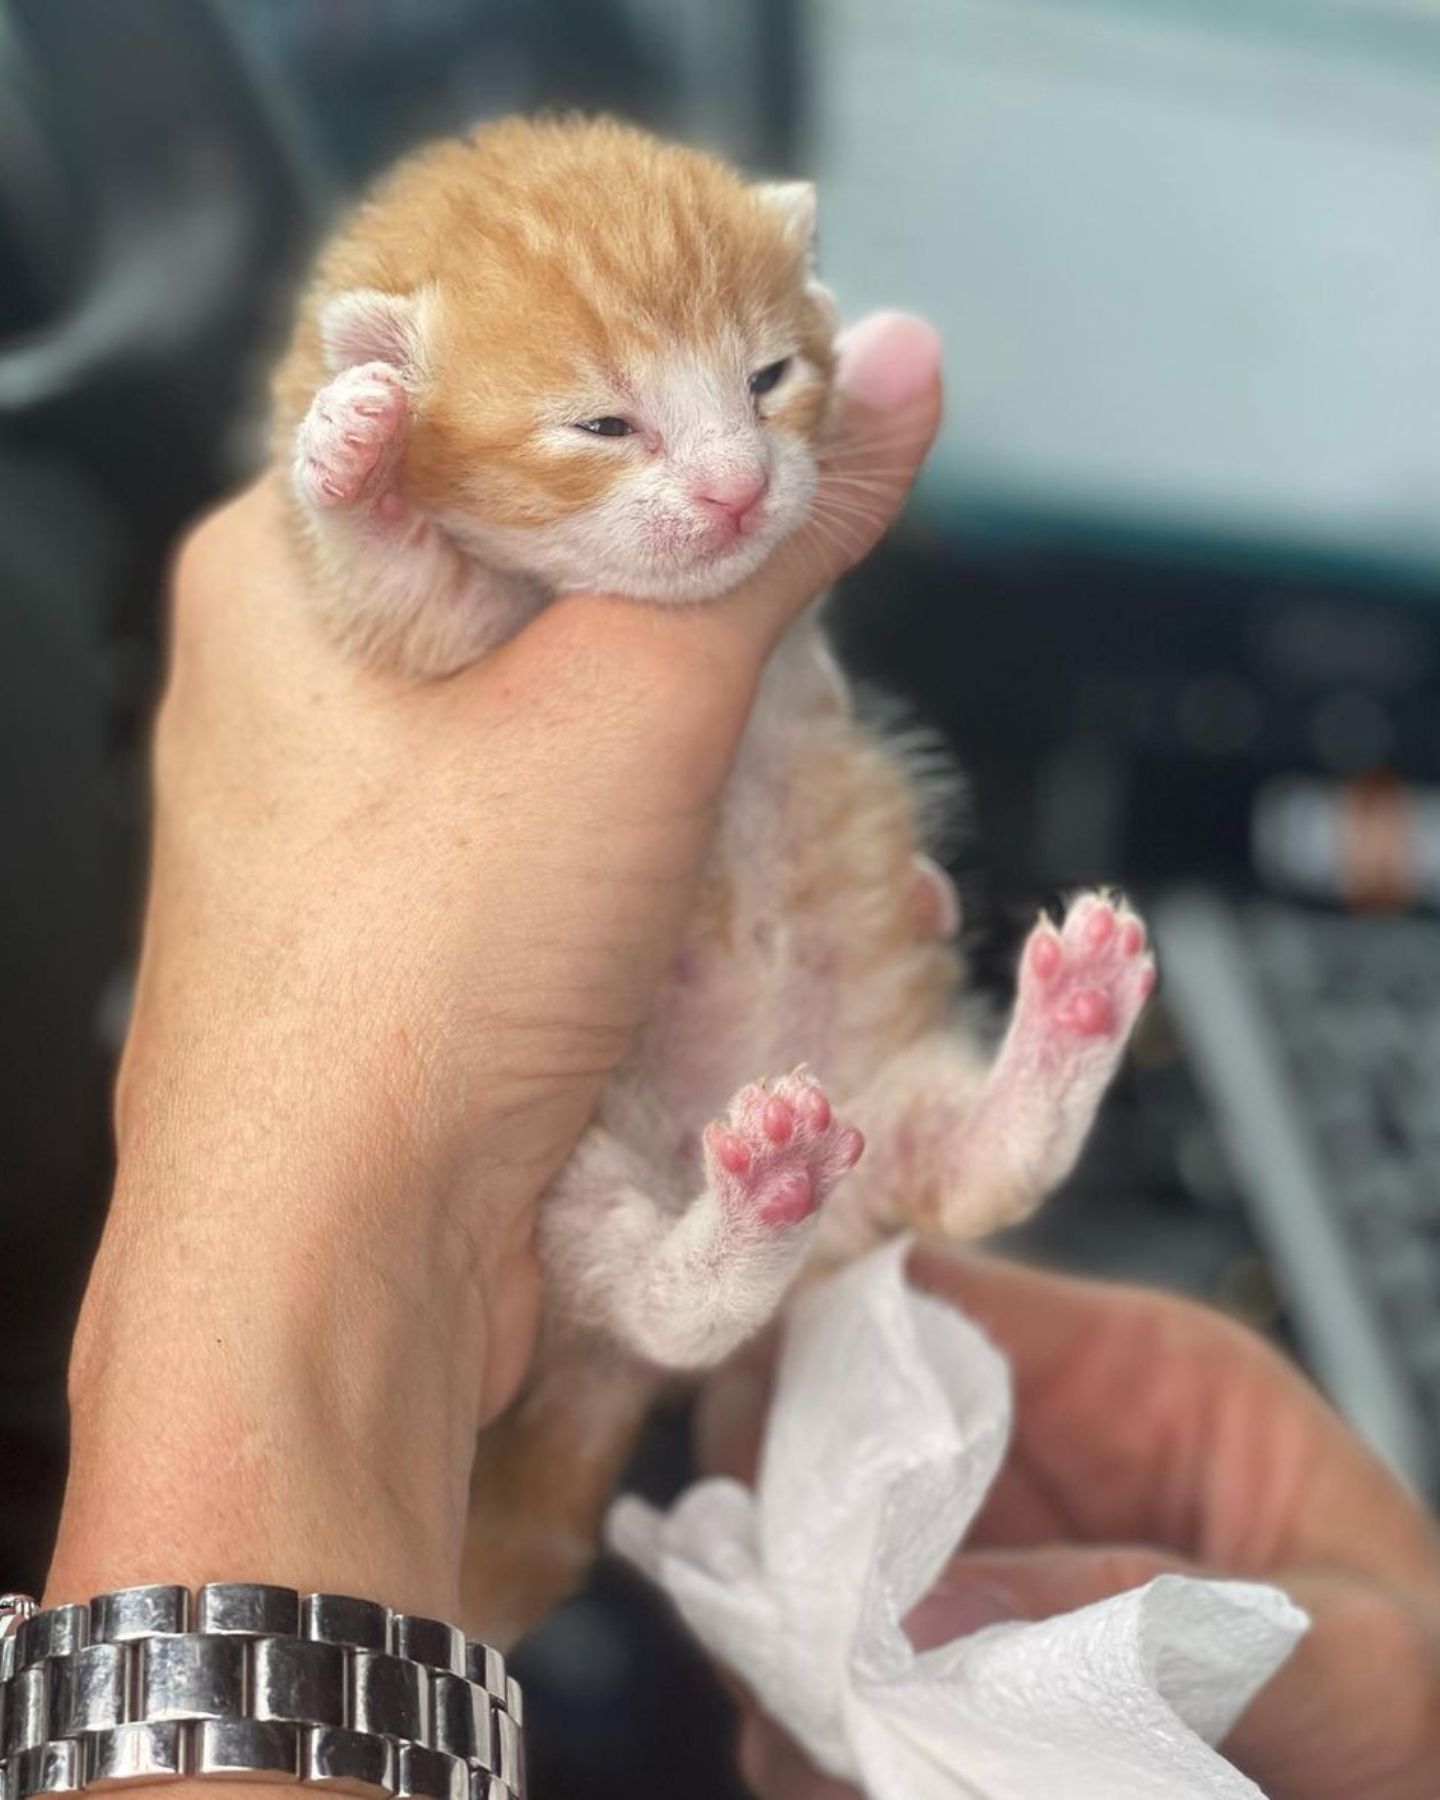 a kitten in hand